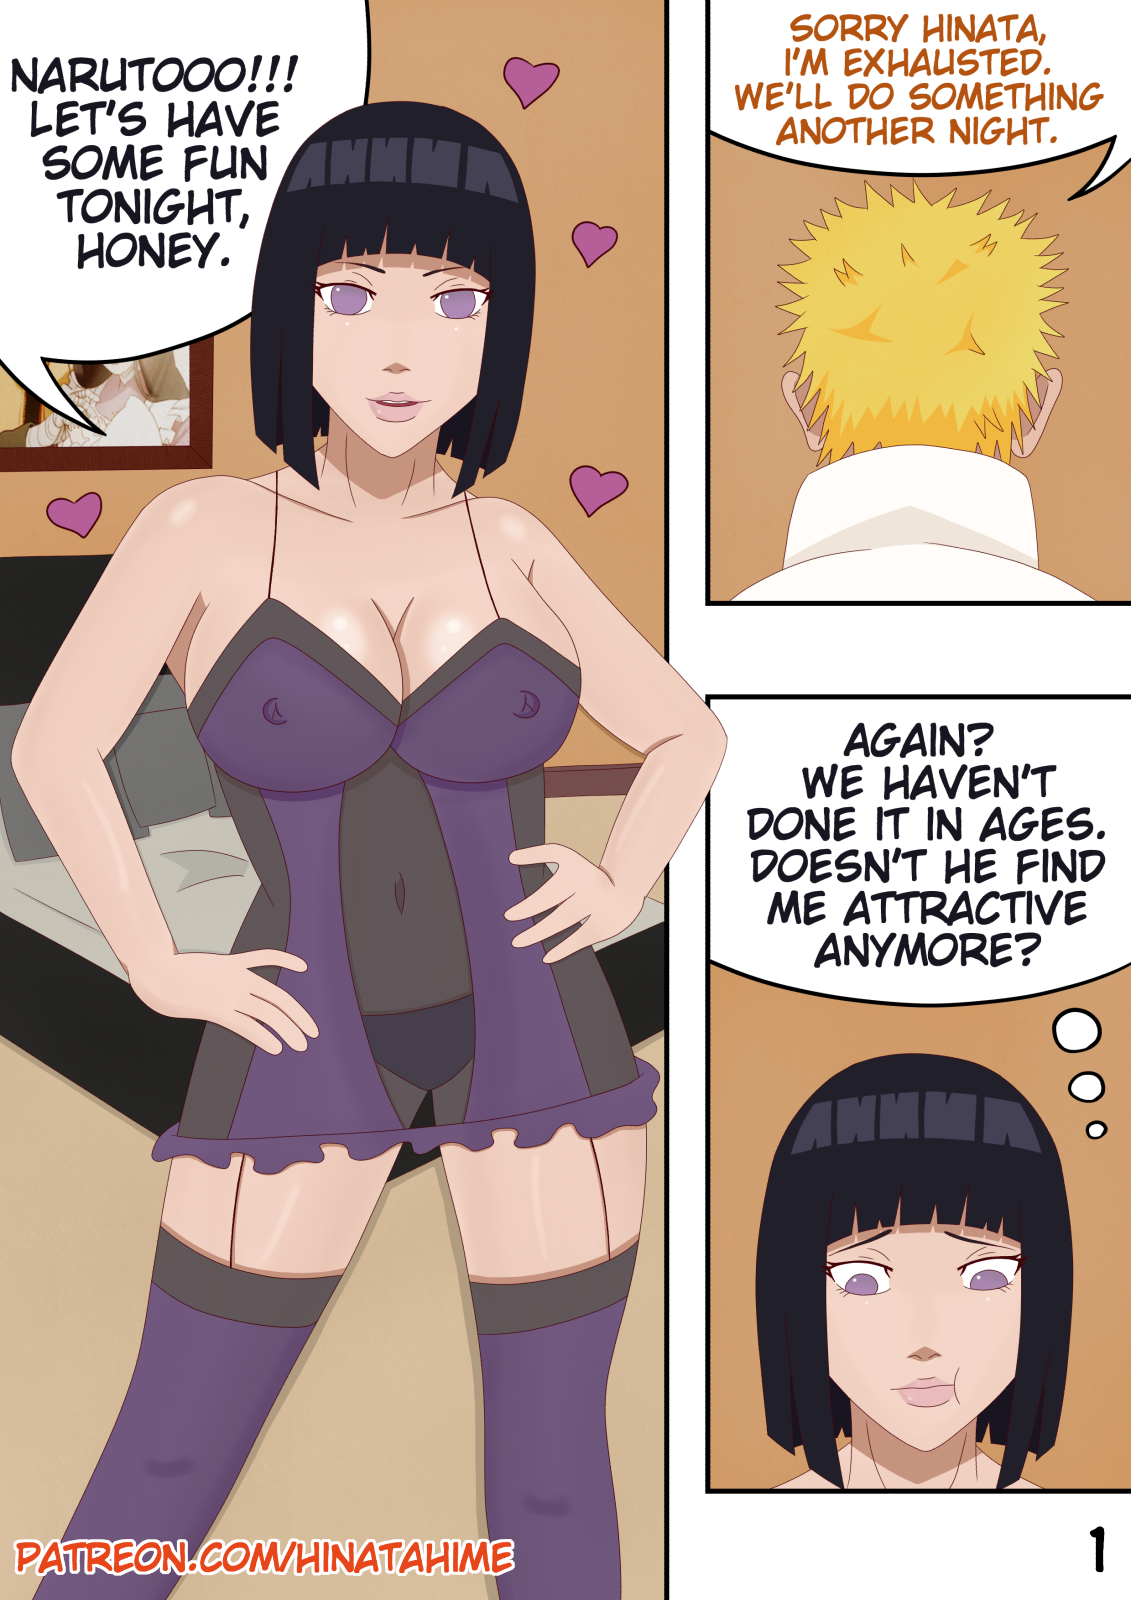 Naruto Hinata porno fumettinero micio squirt Tumblr